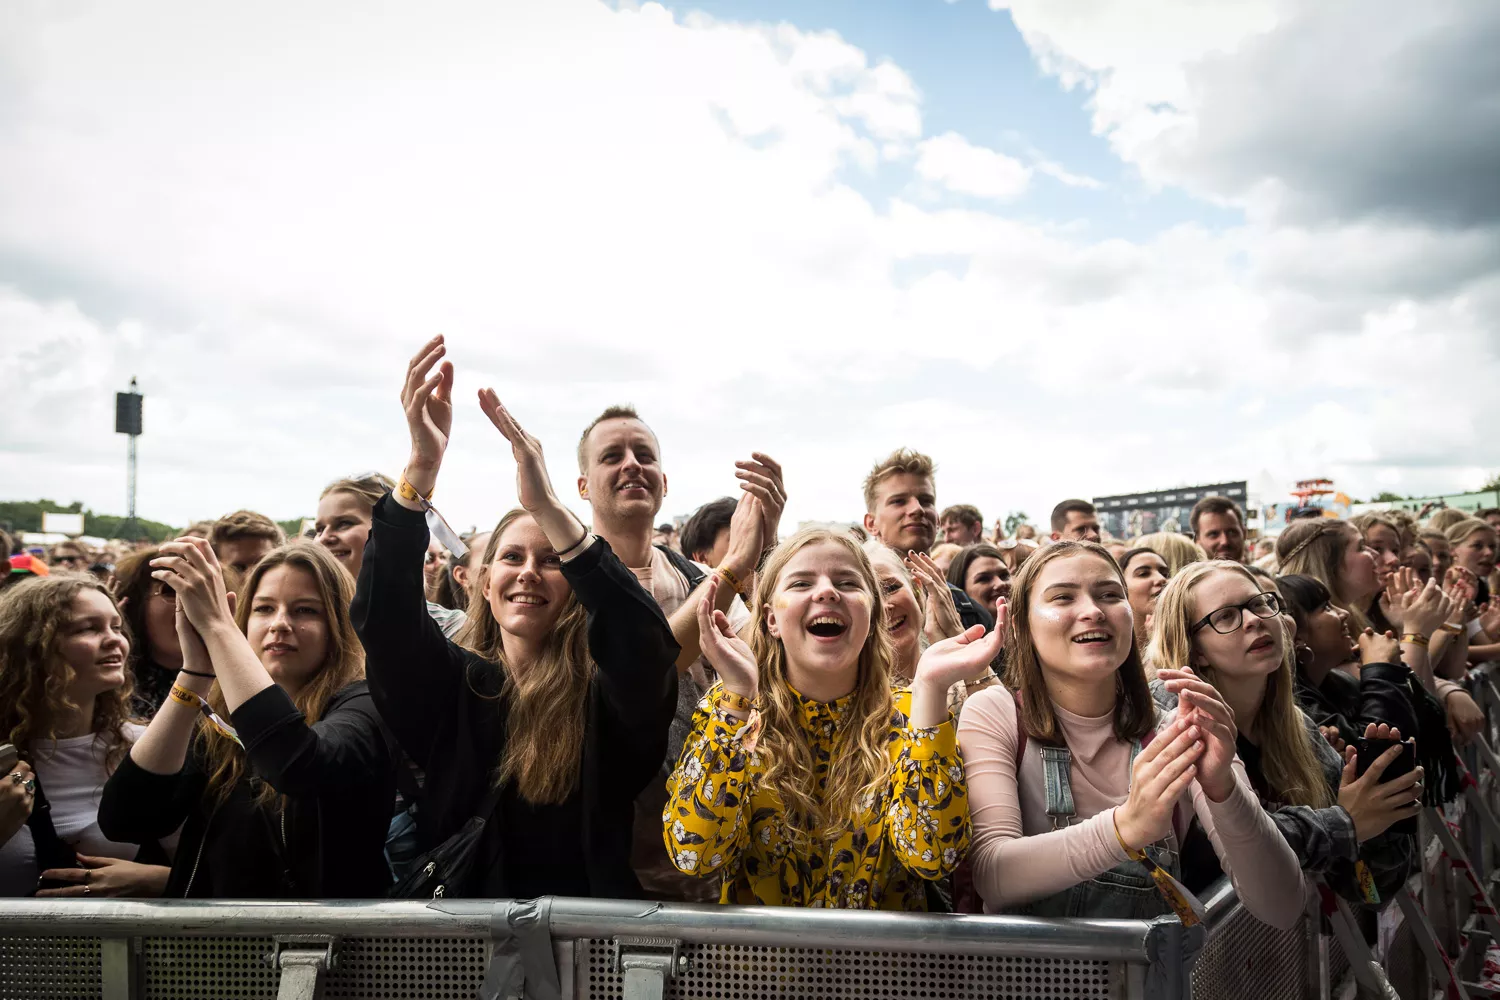 Amerikansk kapitalfond investerer millioner i danske festivaler